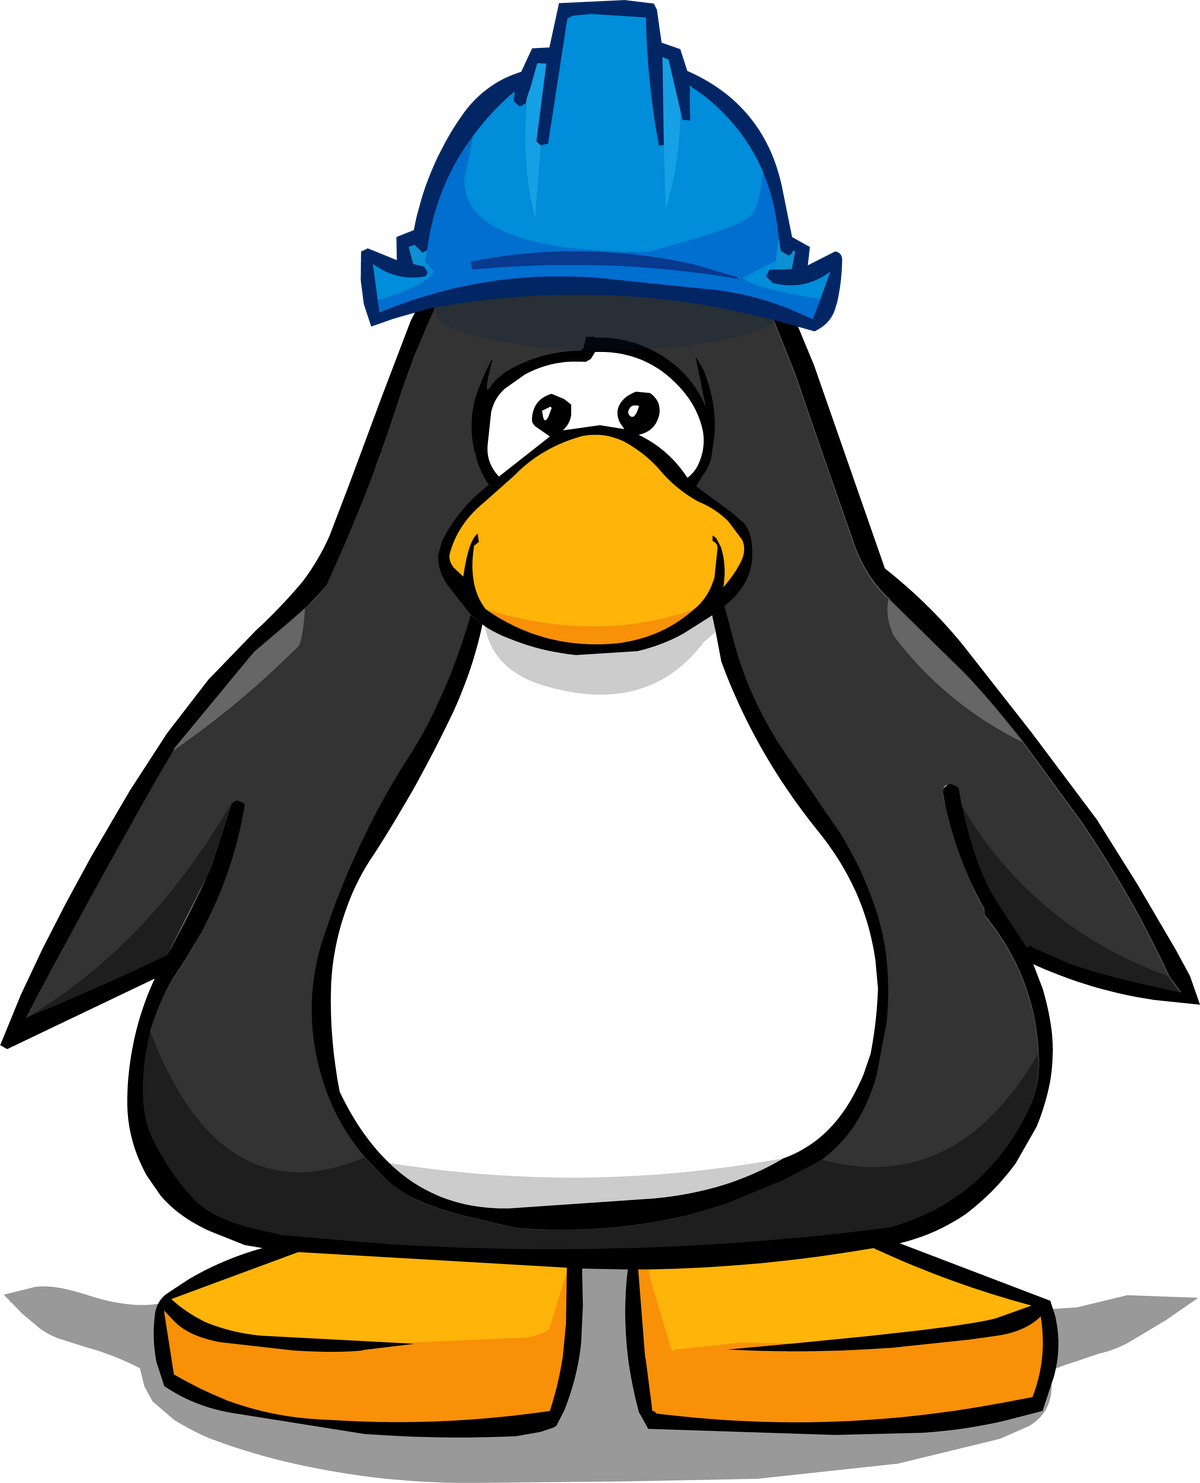 Iceberg tipper club penguin wiki